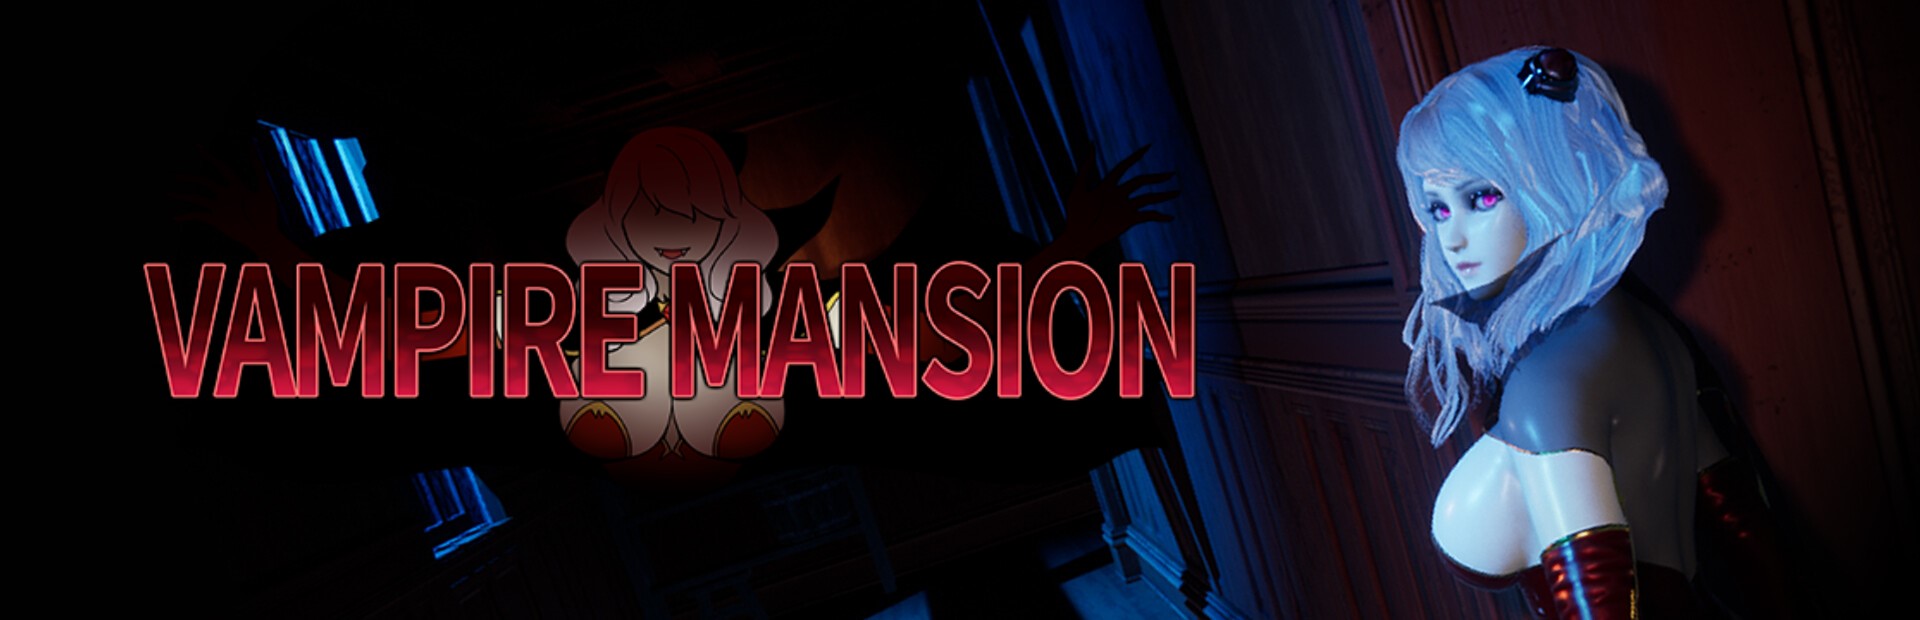 Vampire Mansion1.jpg